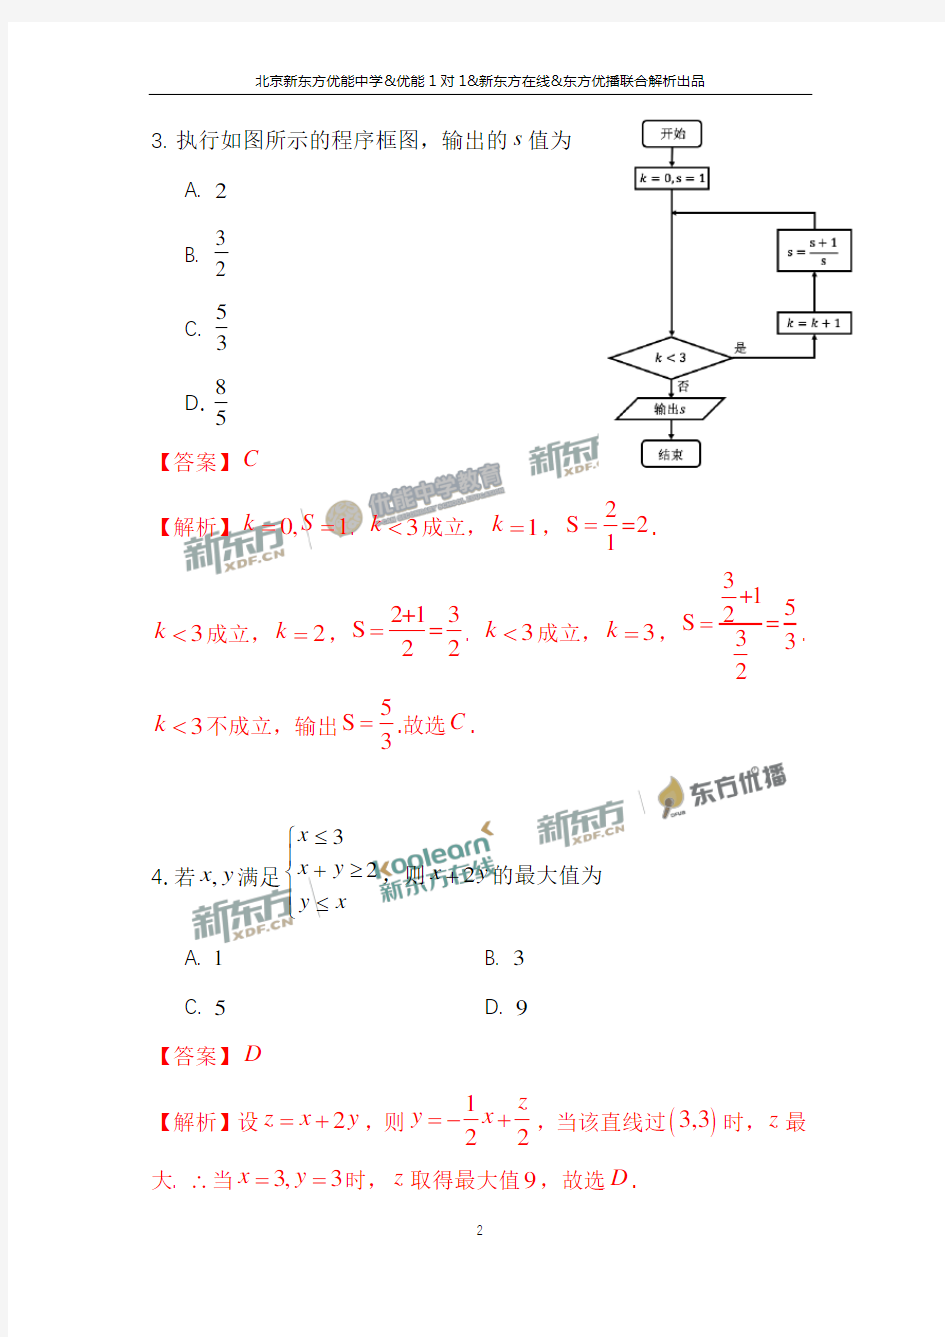 2017年北京高考文科数学试题及答案解析